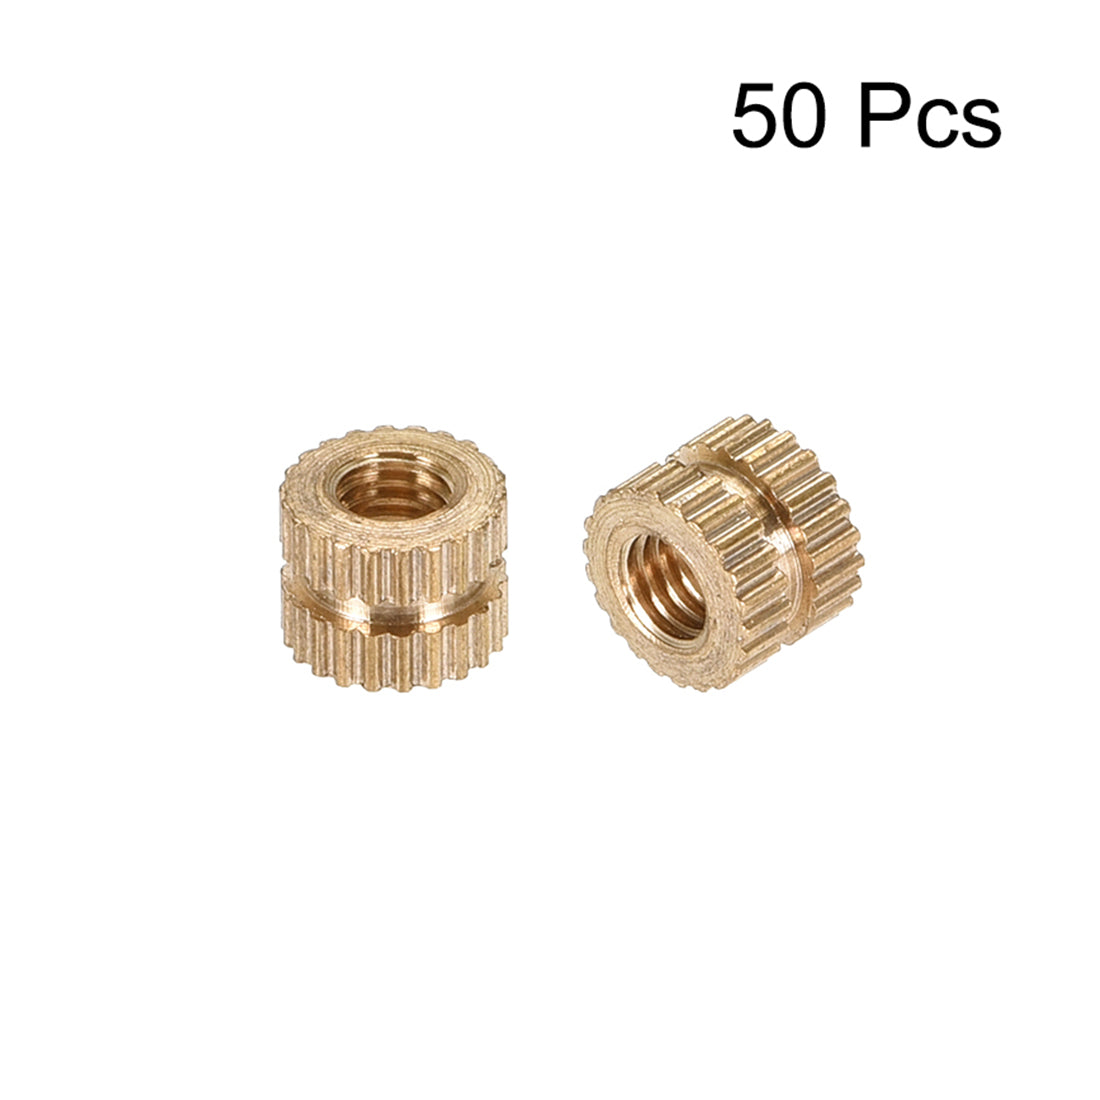 uxcell Uxcell Knurled Insert Nuts, M3 x 5mm(L) x 5mm(OD) Female Thread Brass Embedment Assortment Kit 50pcs